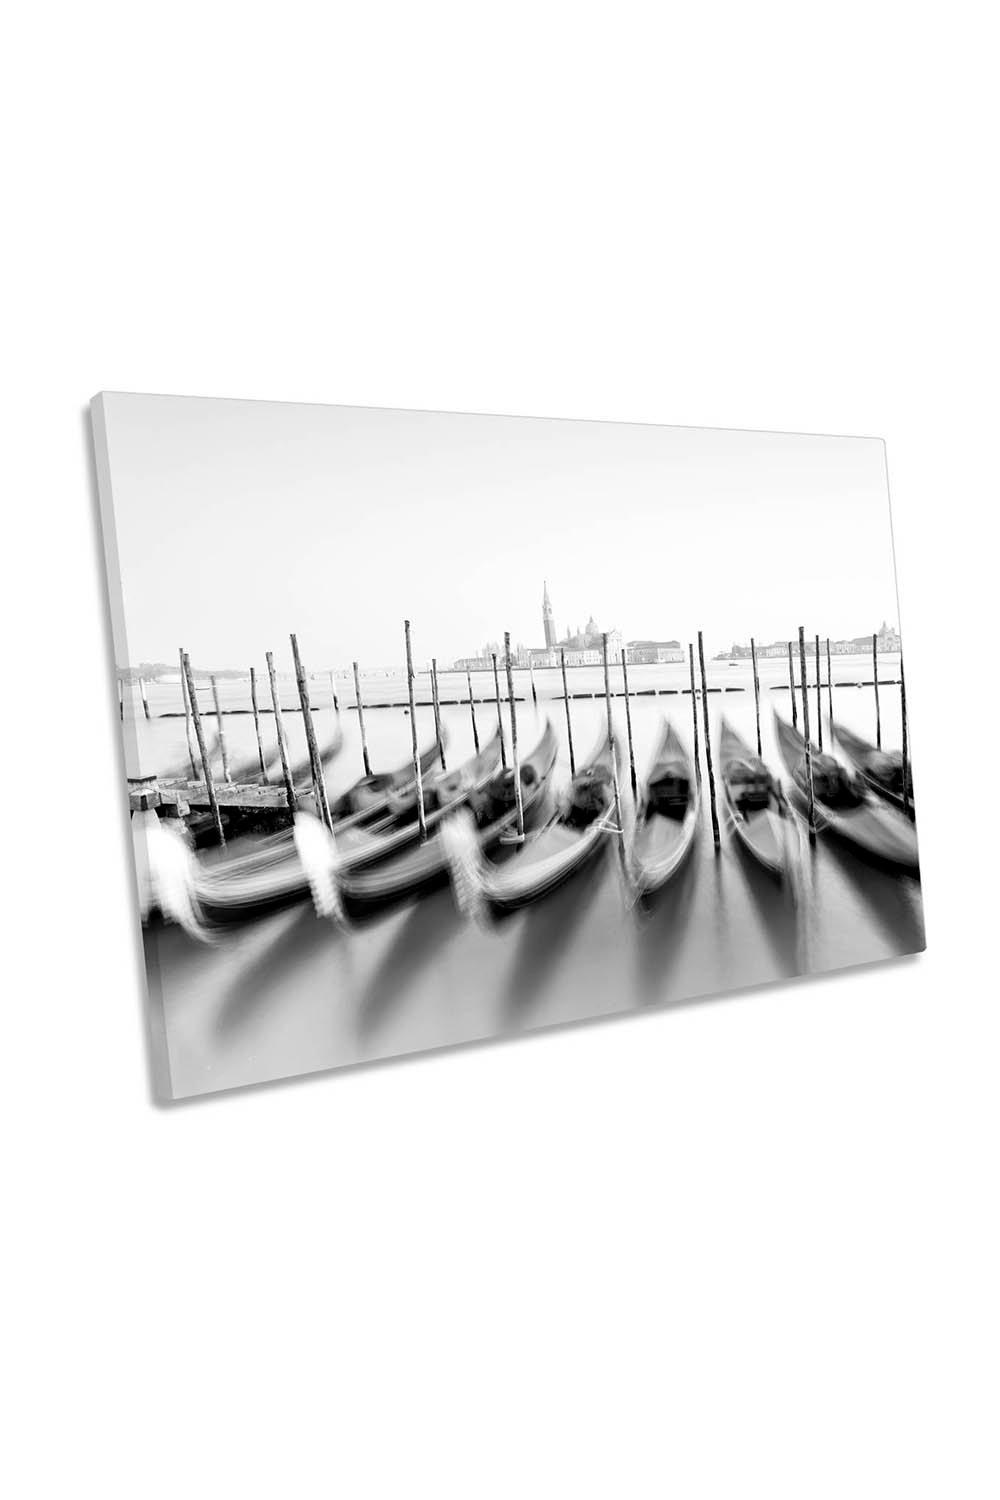 San Giorgio Venice Gondola Bay Boats City Canvas Wall Art Picture Print